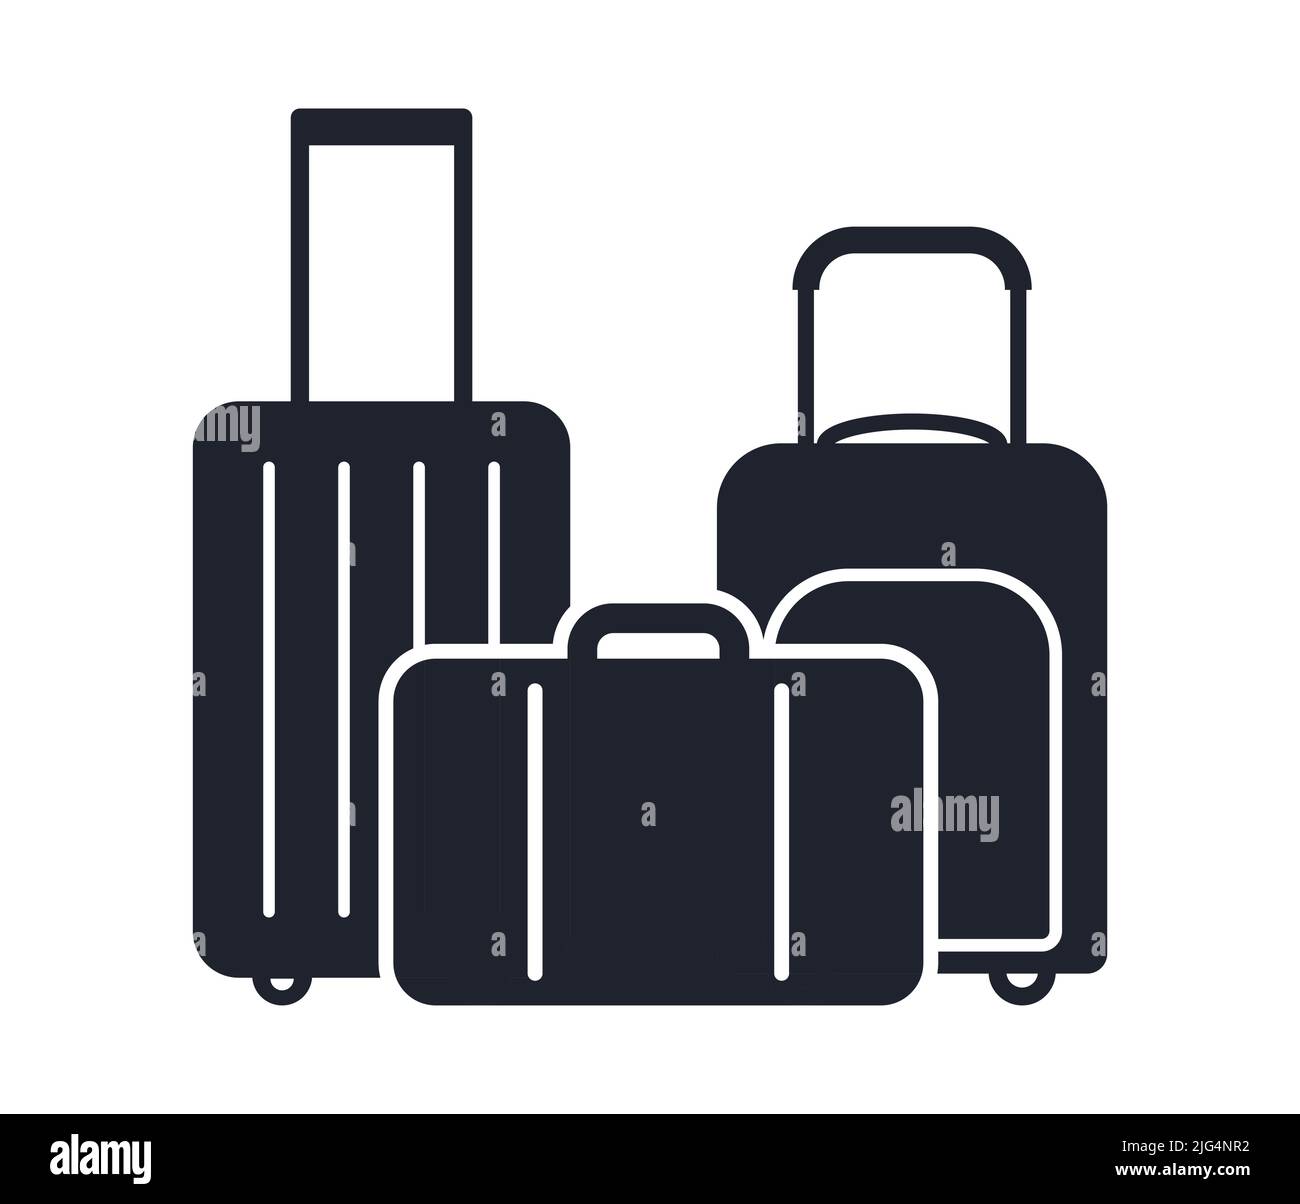 Bolsas de viaje maleta de equipaje y símbolo de portmanteau icono de ilustración de vector Ilustración del Vector